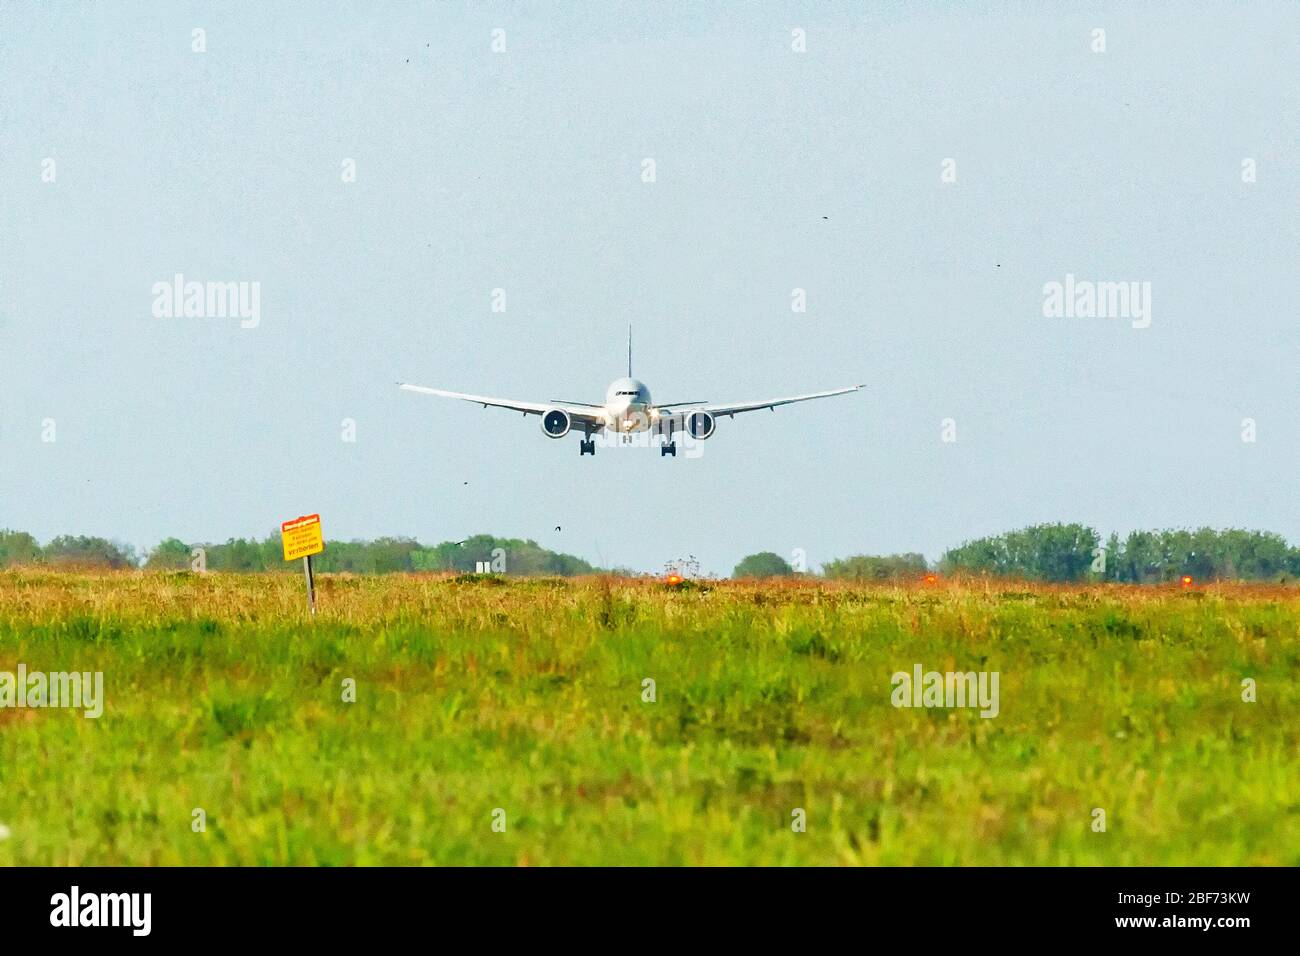 16 aprile 2020 Maastricht, Paesi Bassi, aereo che lascia l'aeroporto Qatar cargo vliegtuig A7-BFH Qatar aereo da carico A7-BFH Foto Stock